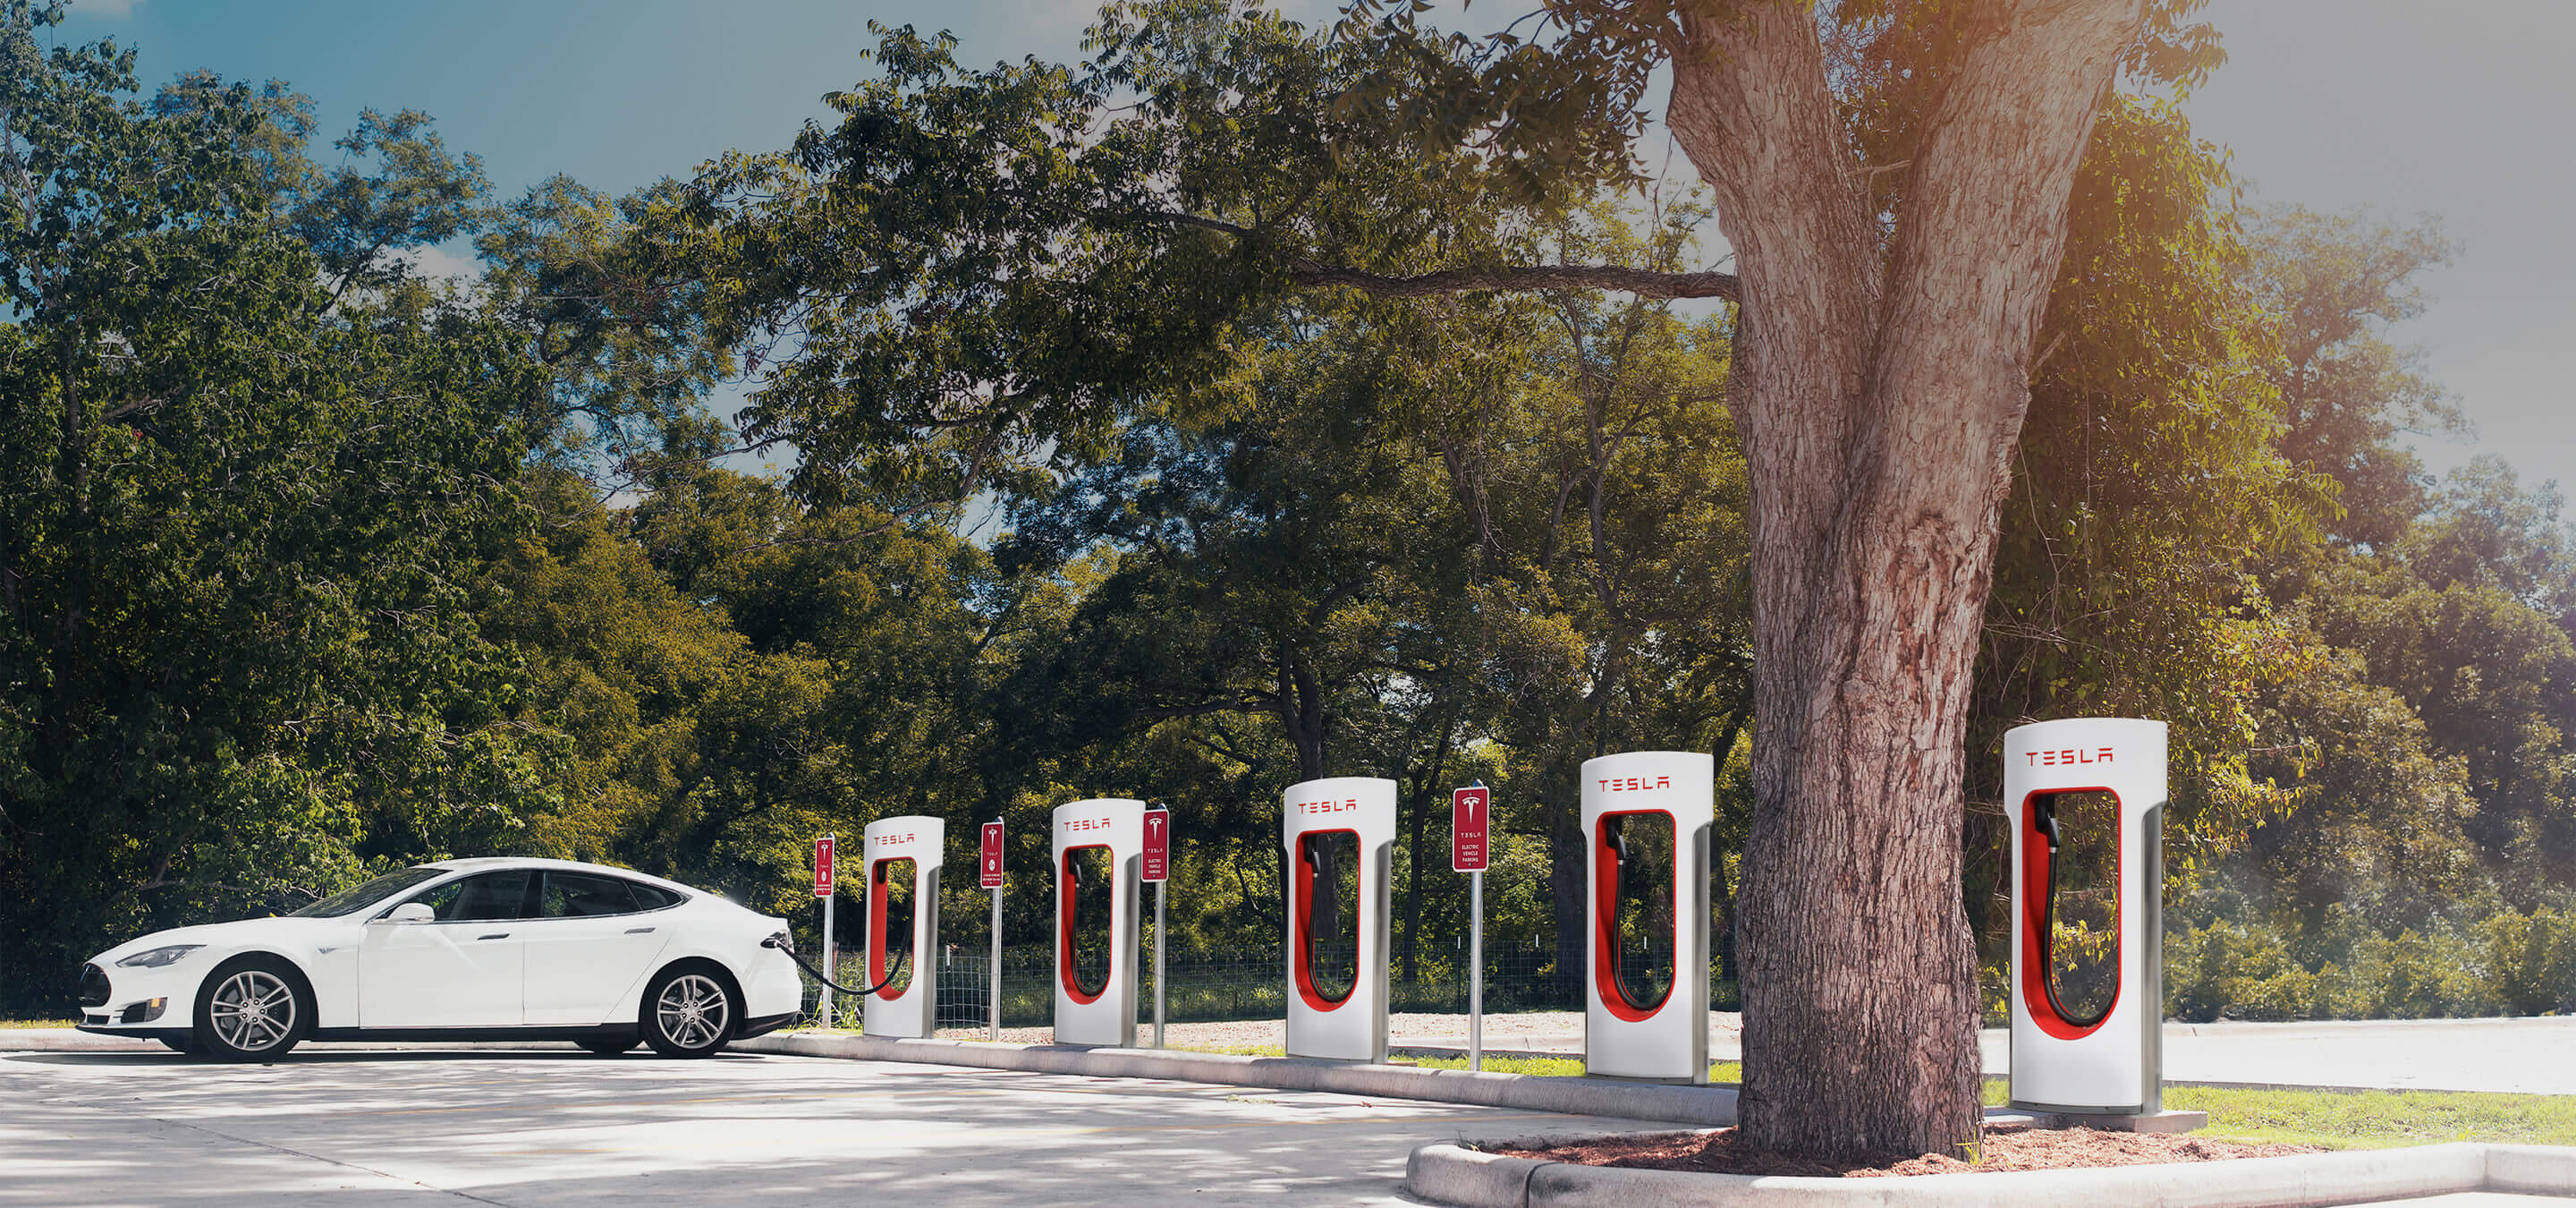 Nicht immer gibt es so viele freie Plätze an den Superchargern, wer sein Elektroauto kostenlos aufladen will, muss mitunter etwas Geduld mitbringen. Bildquelle: Tesla Motors